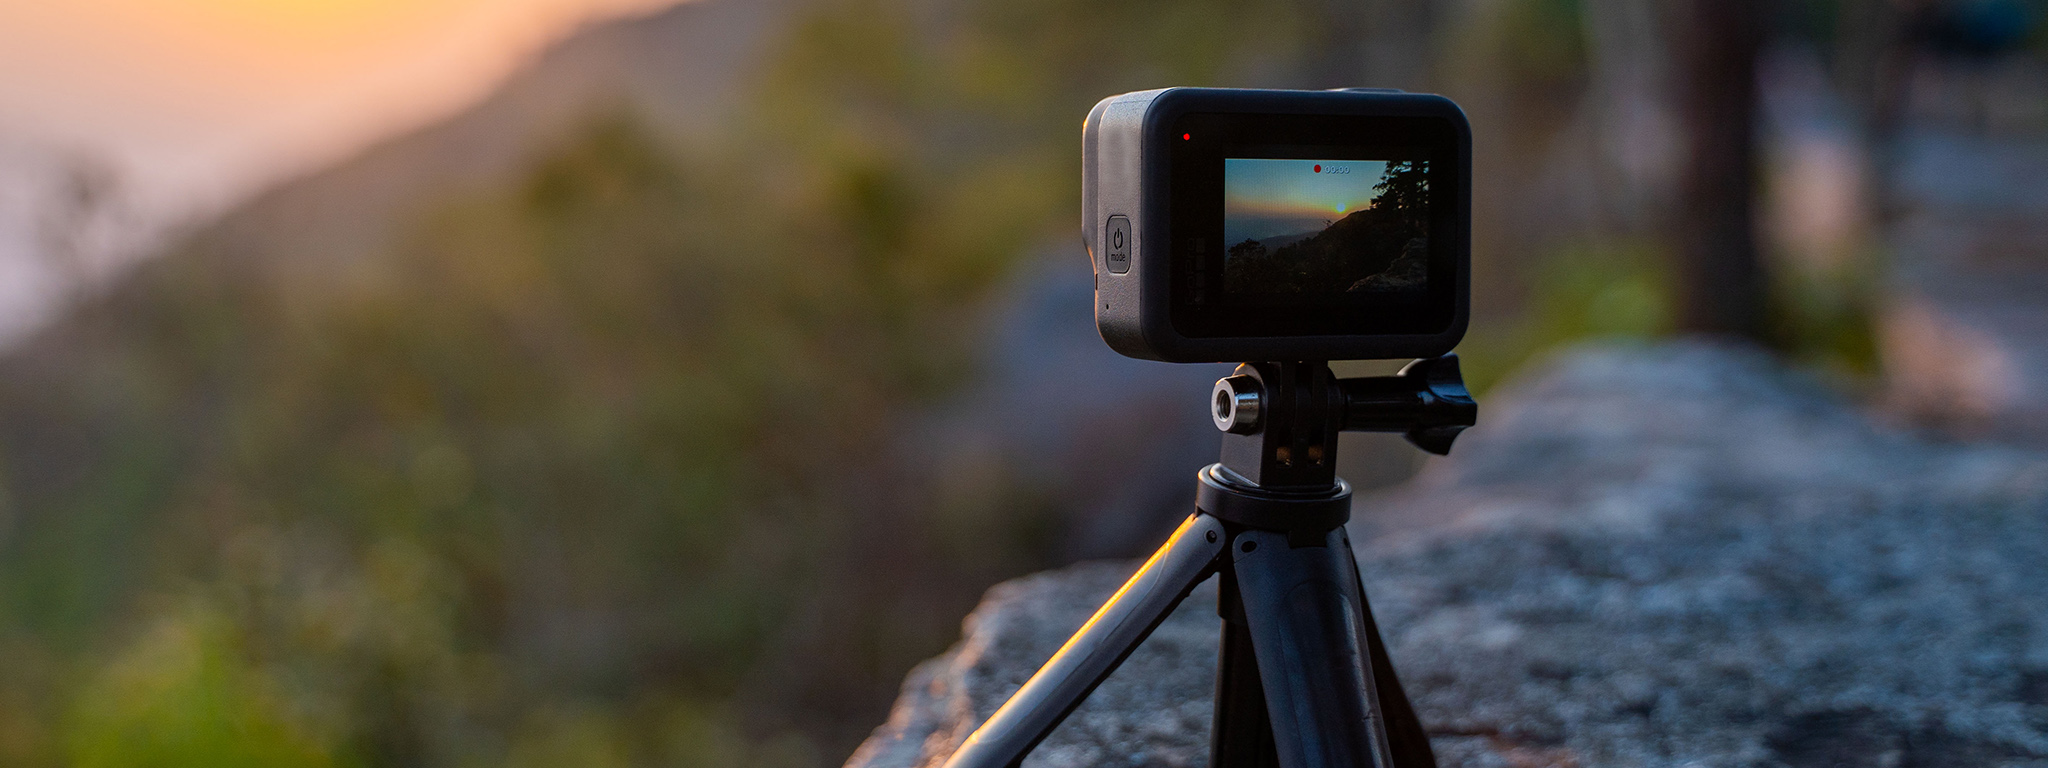 Таймлапс-зйомка заходу сонця за допомогою GoPro